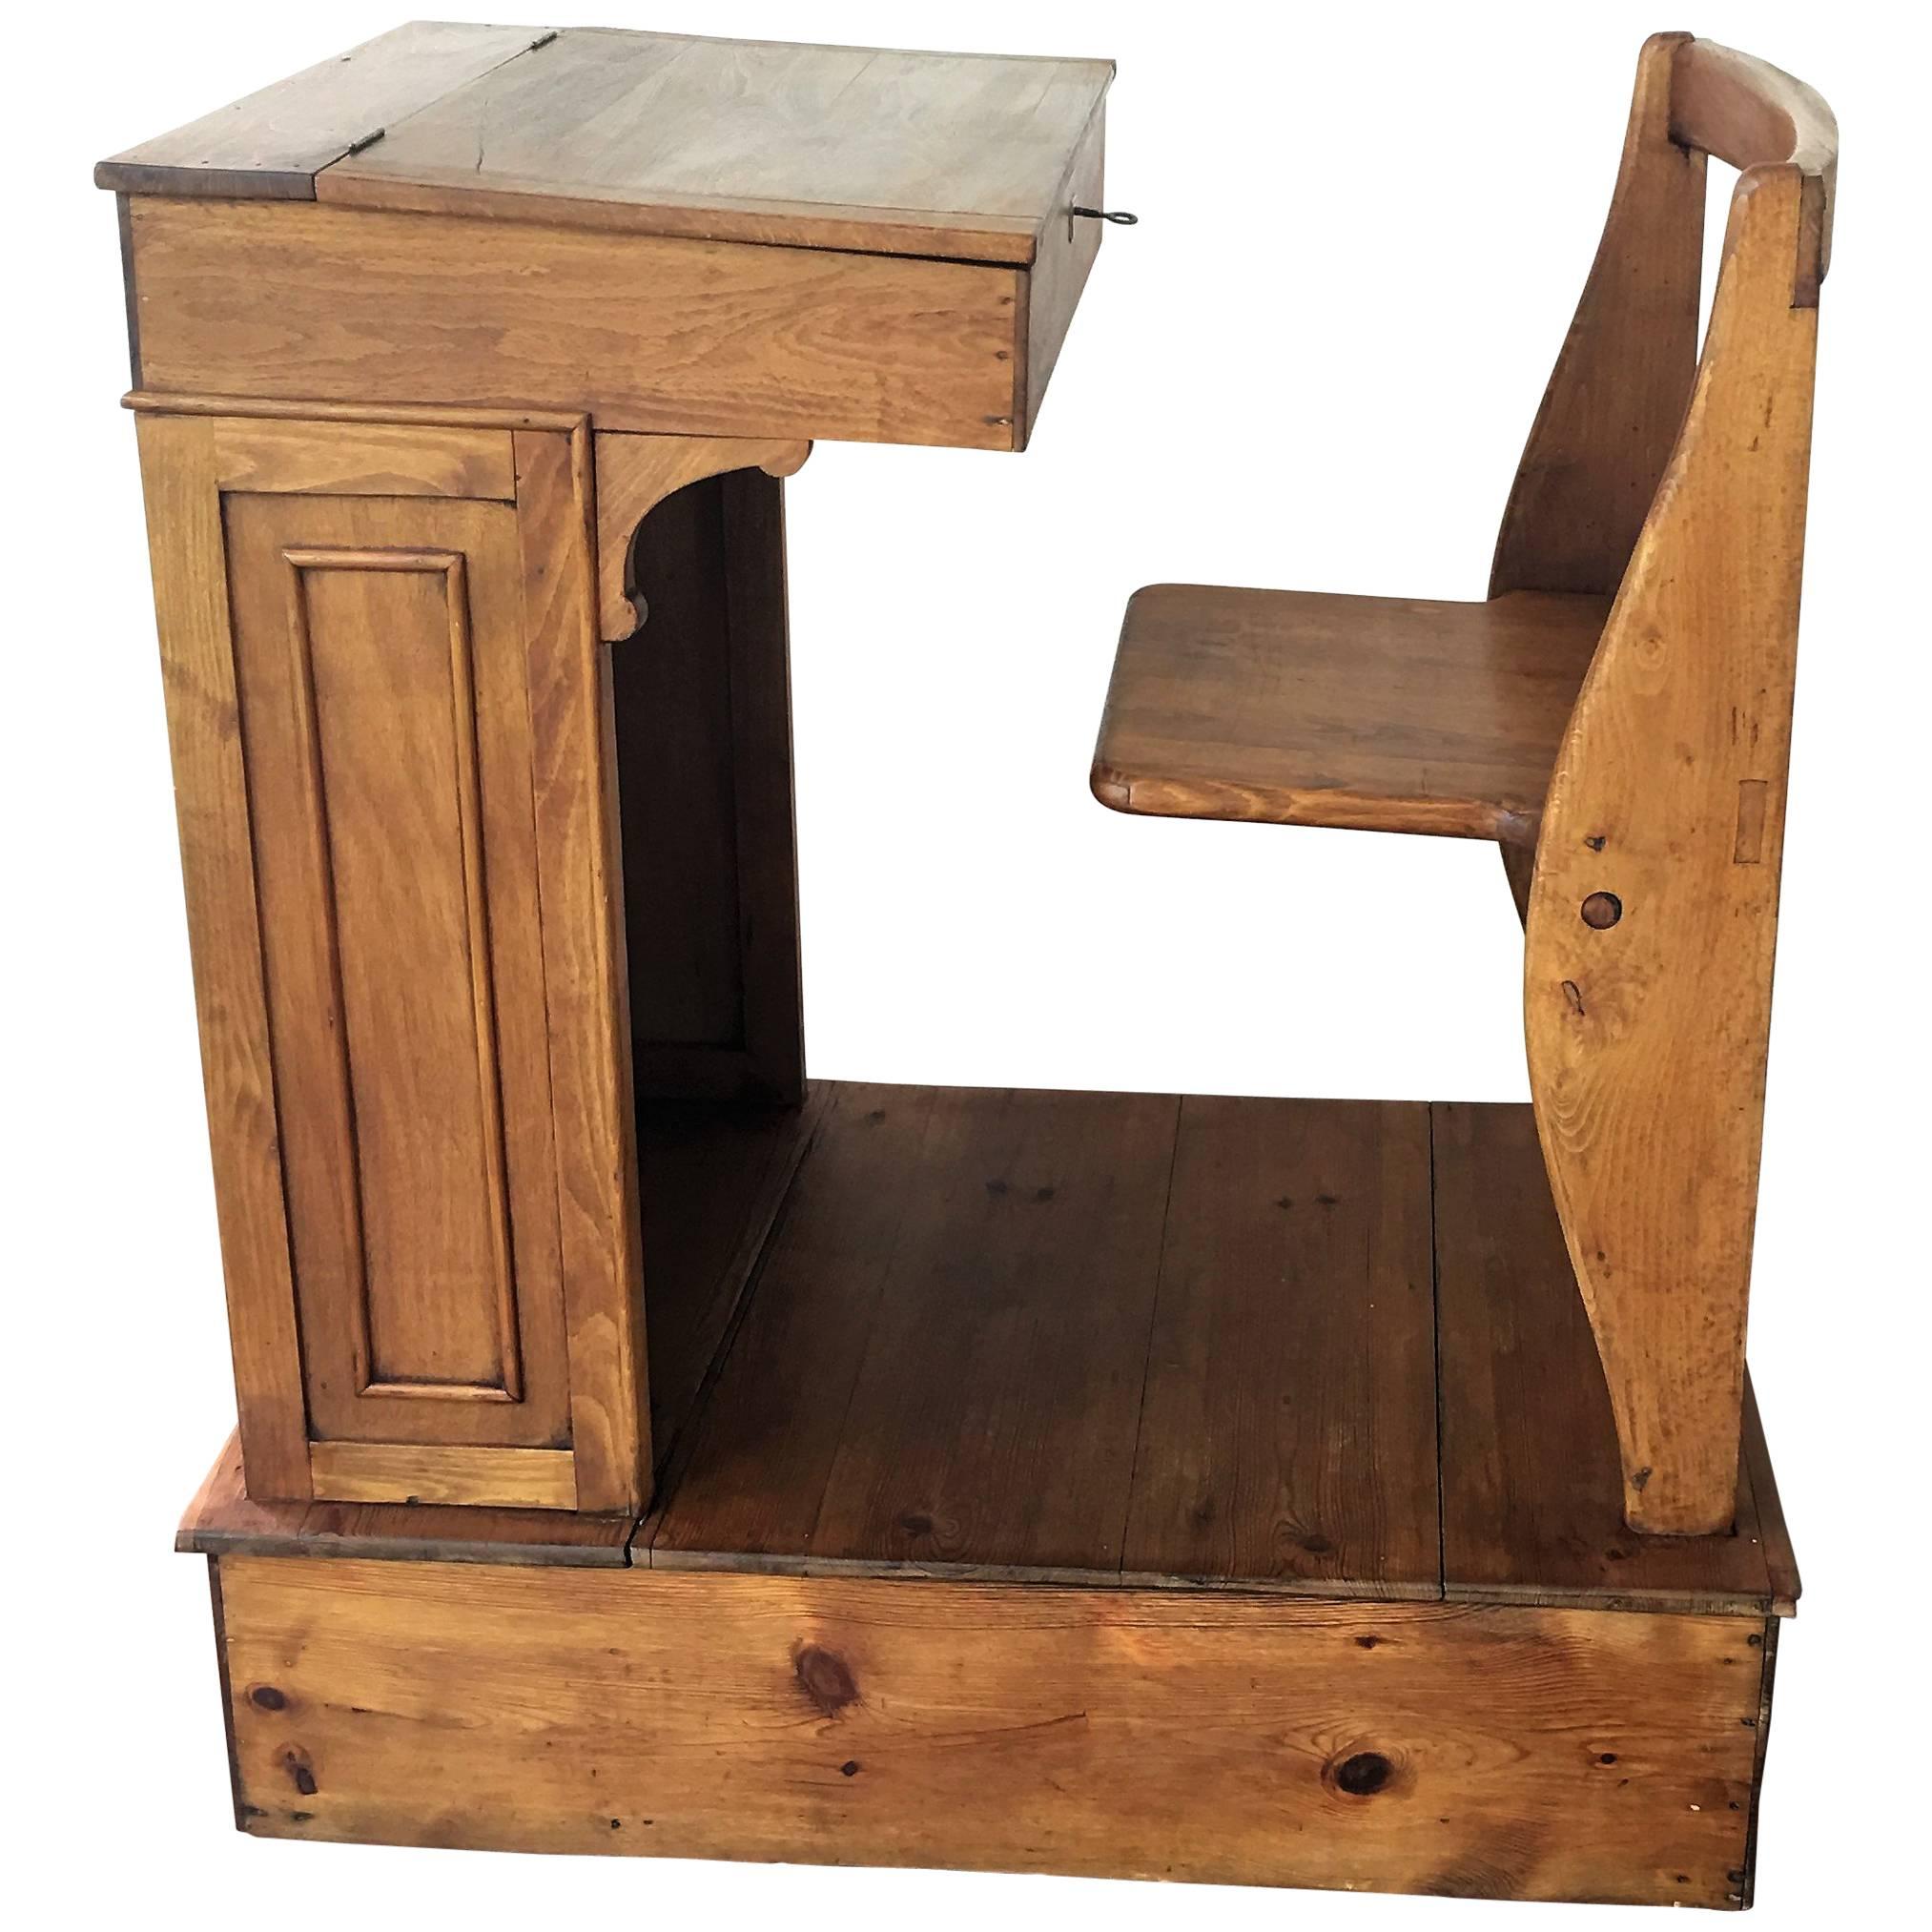 Base height: 9 in

1940s Children's Adjustable Spanish School Desk in Wood